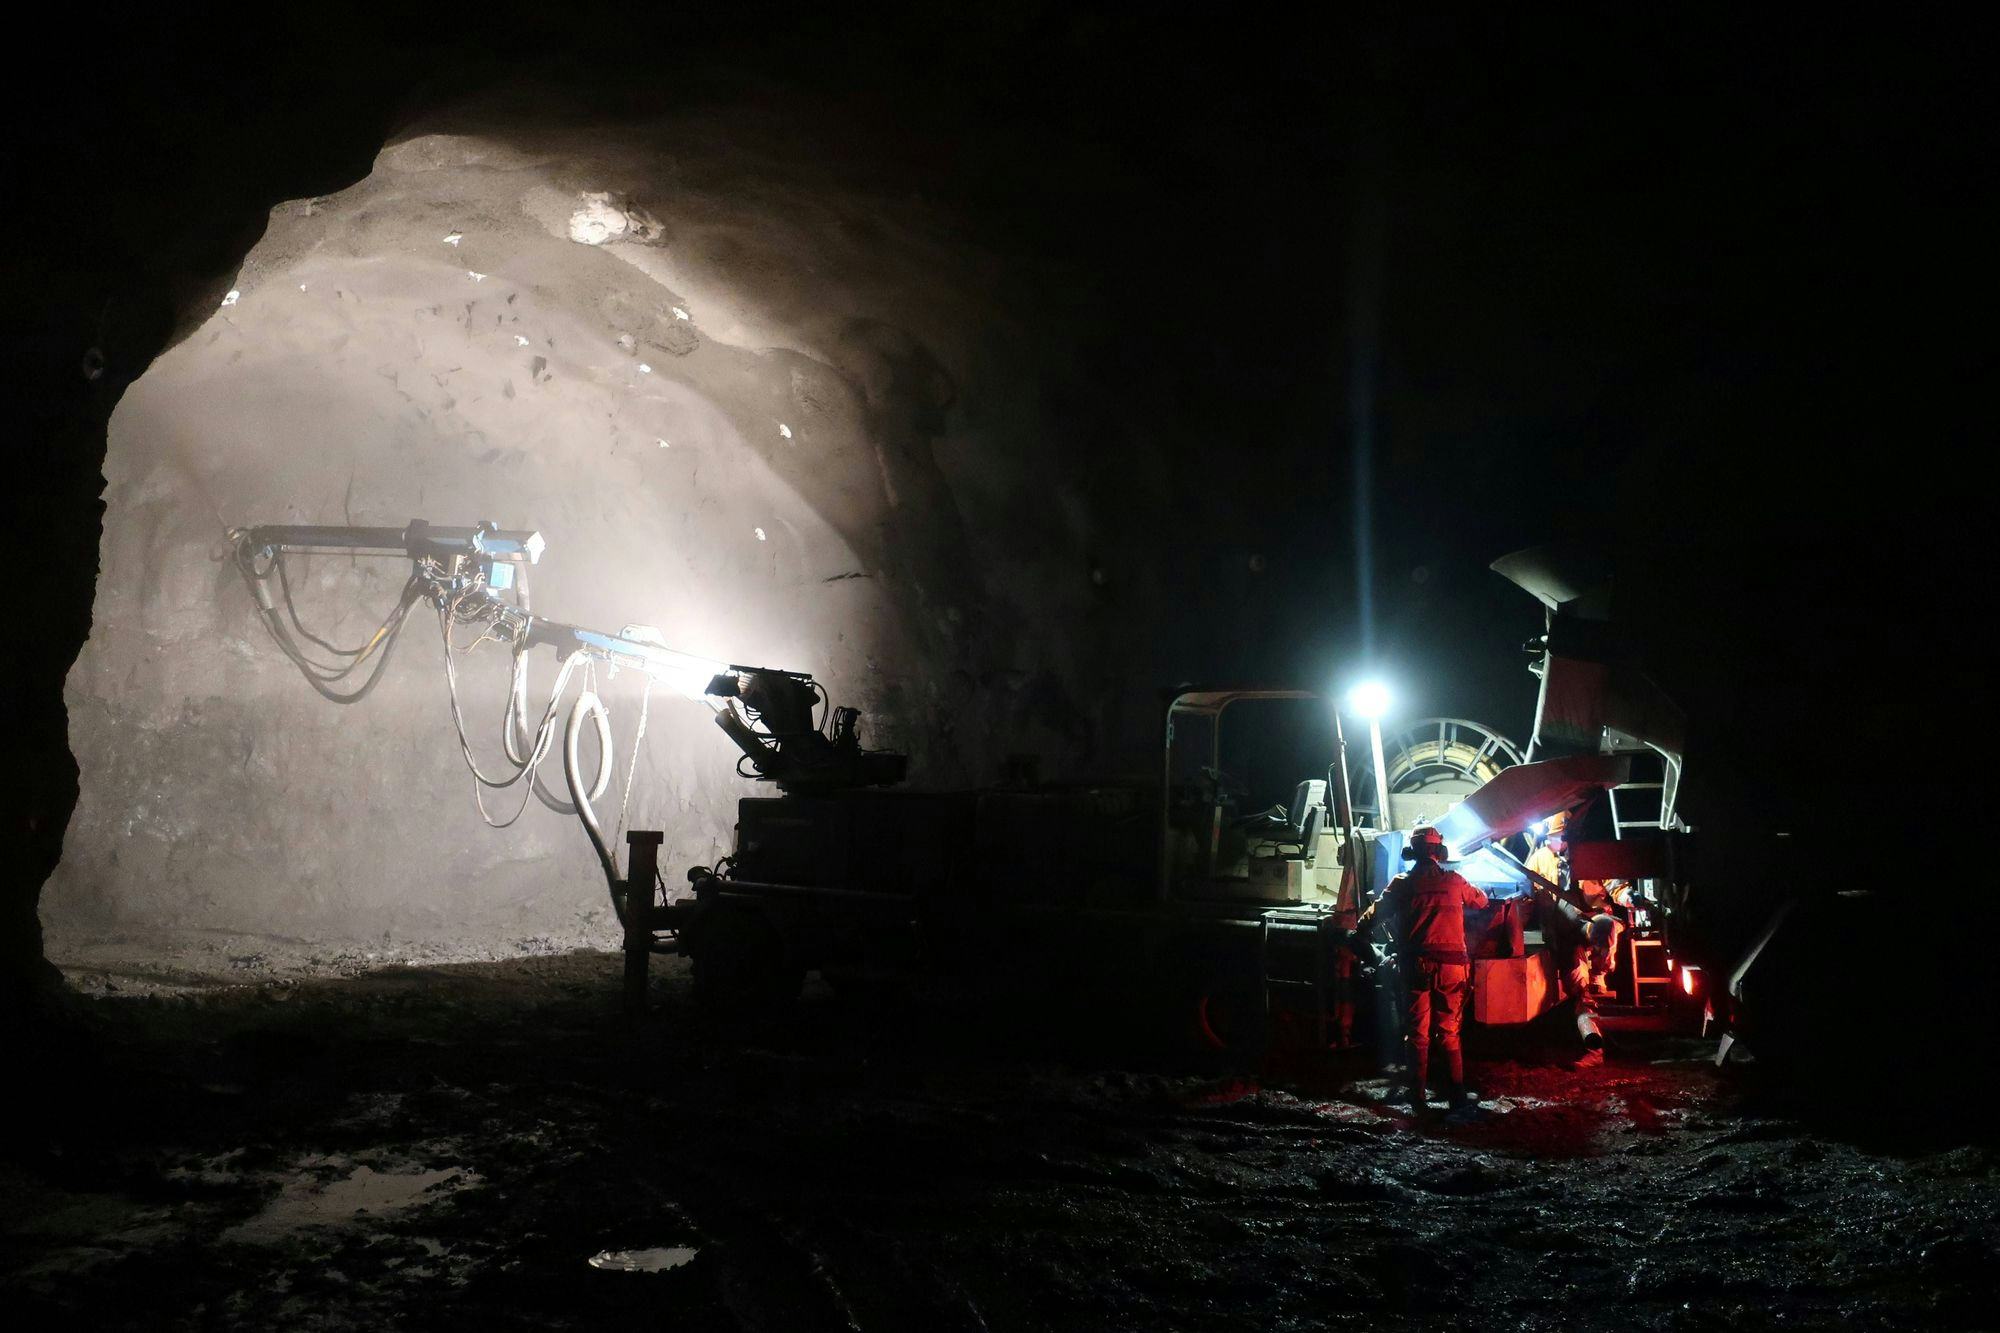 Dimly lit underground tunnel construction site